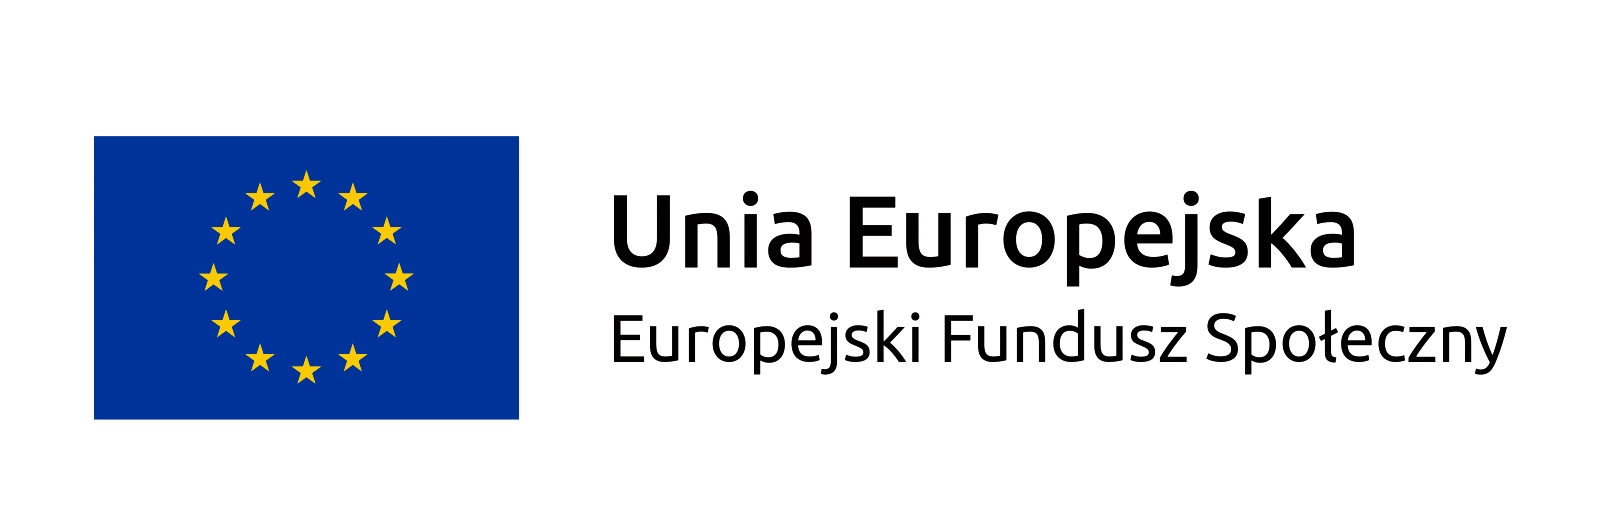 logo Unia Europejska Europejski Fundusz społeczny